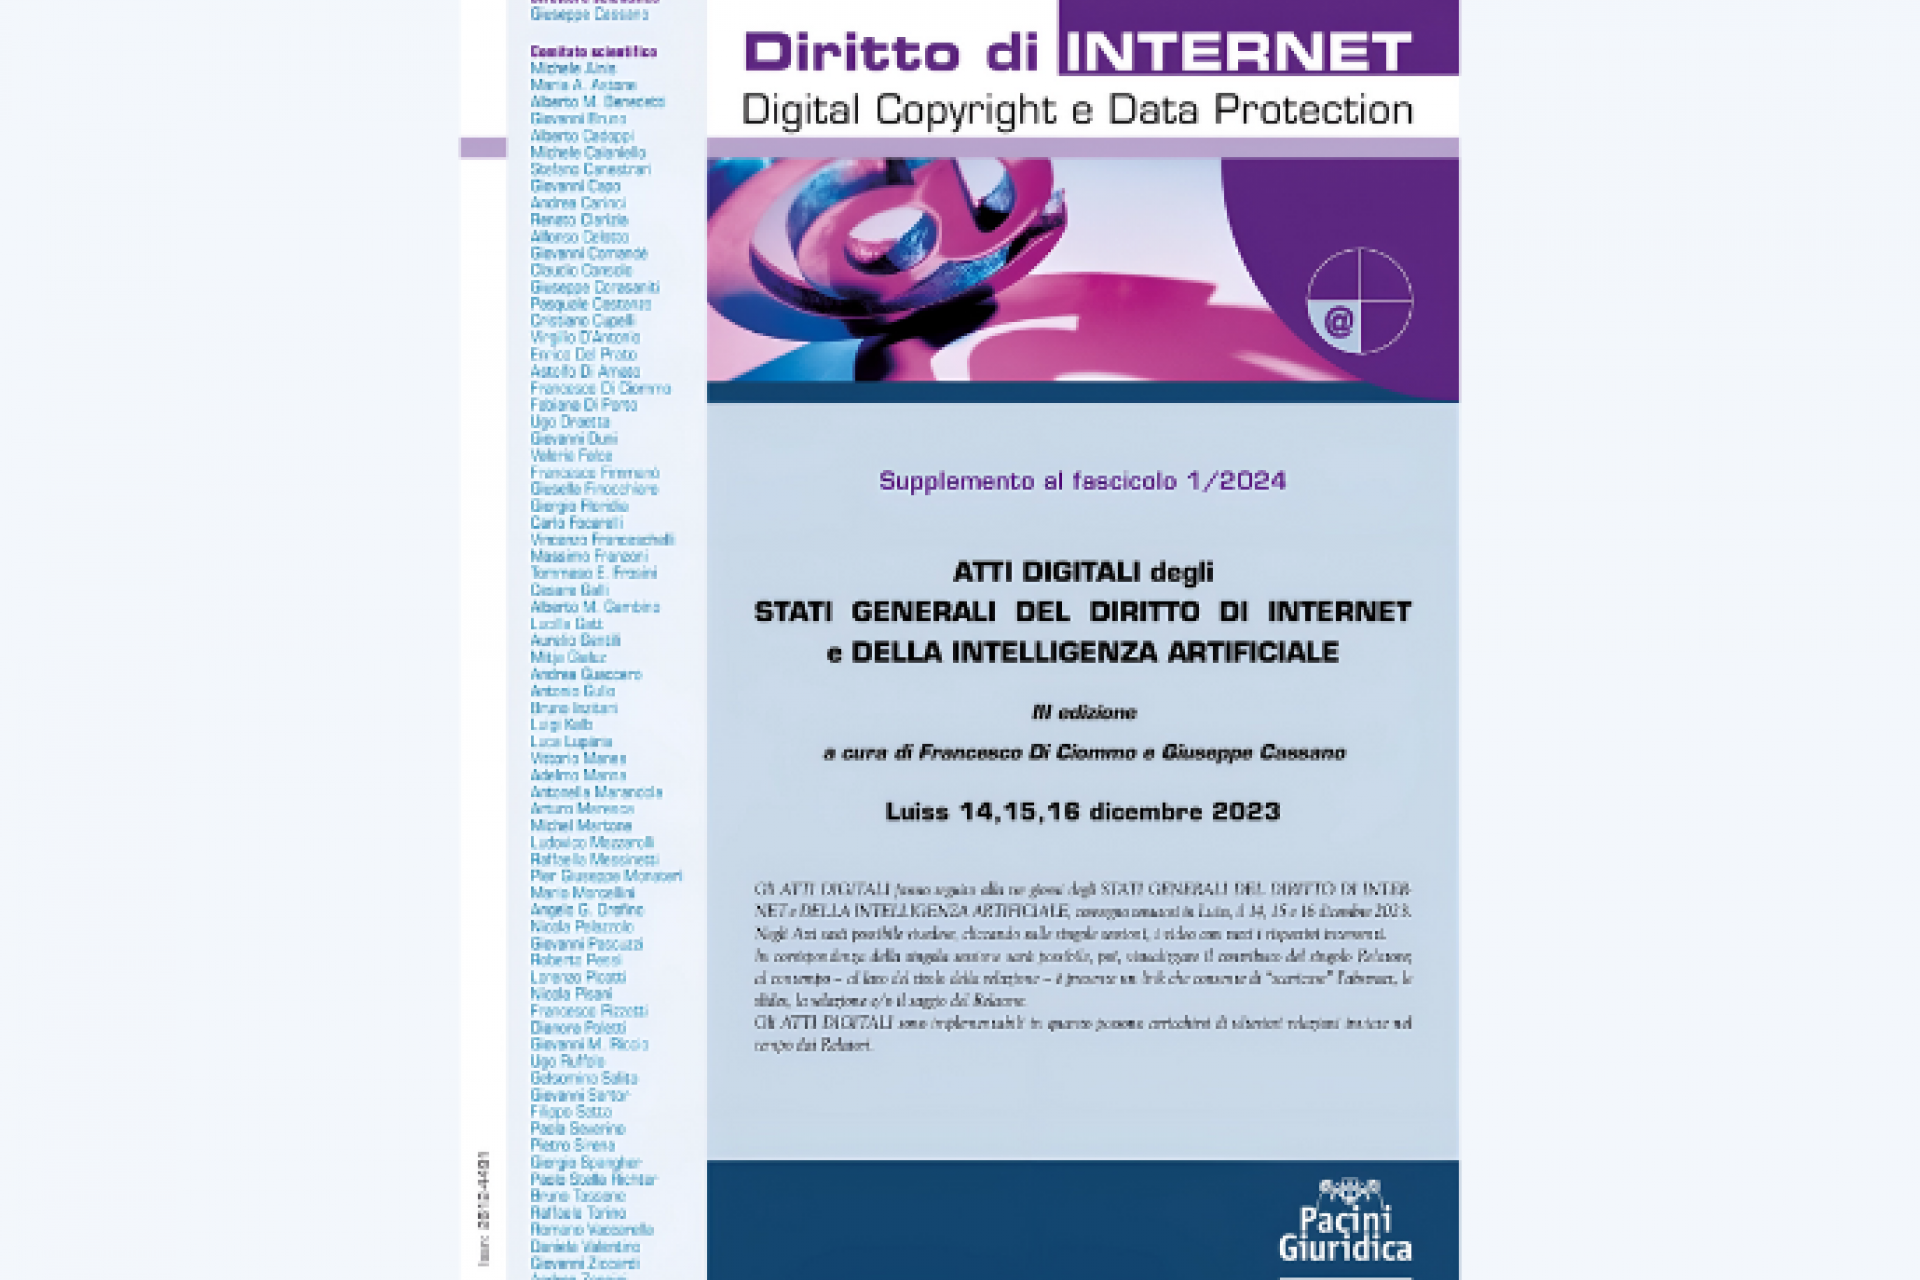 Atti Digitali - "Gli Stati Generali del Diritto di Internet e della Intelligenza Artificiale"